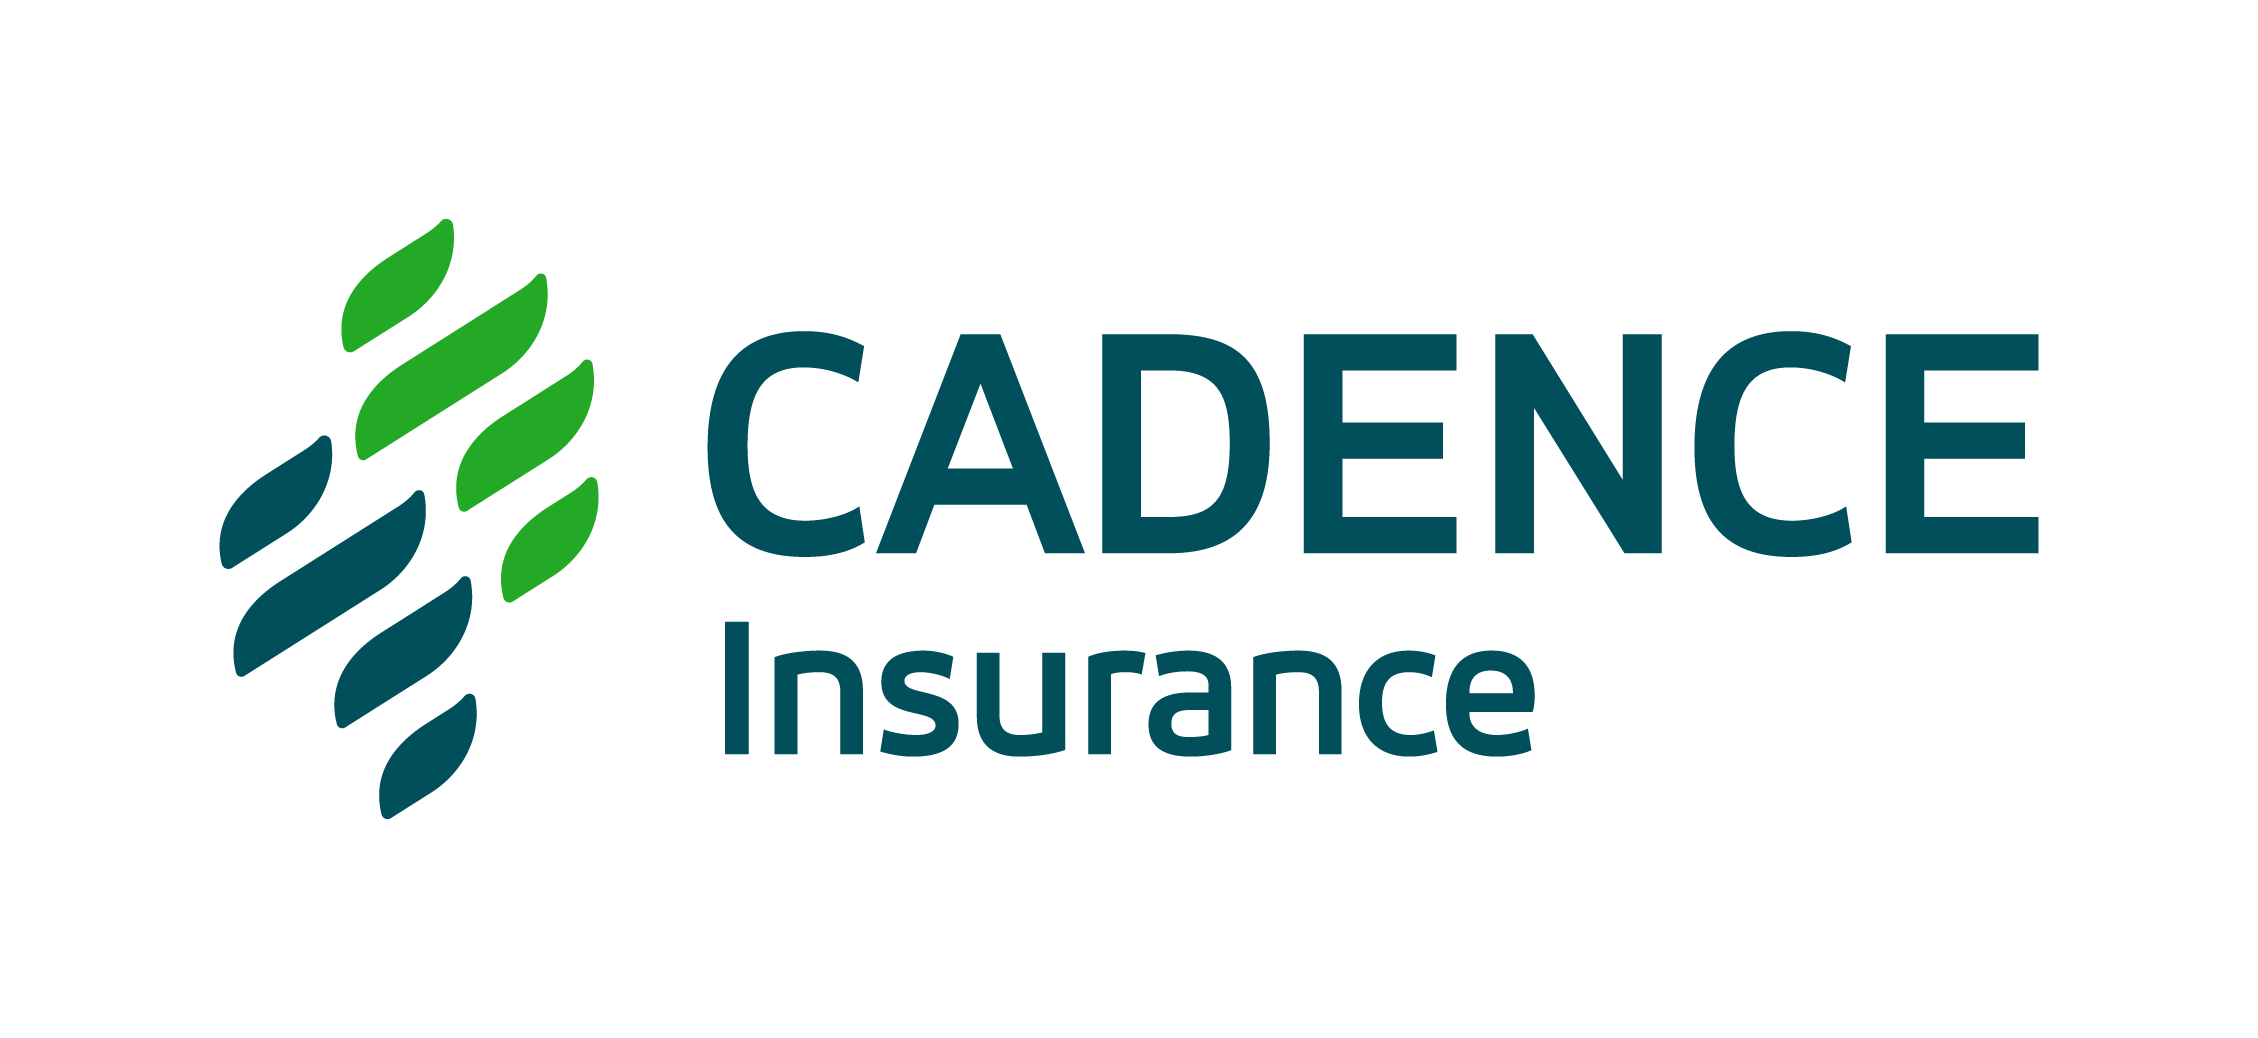 Cadence Insurance logo